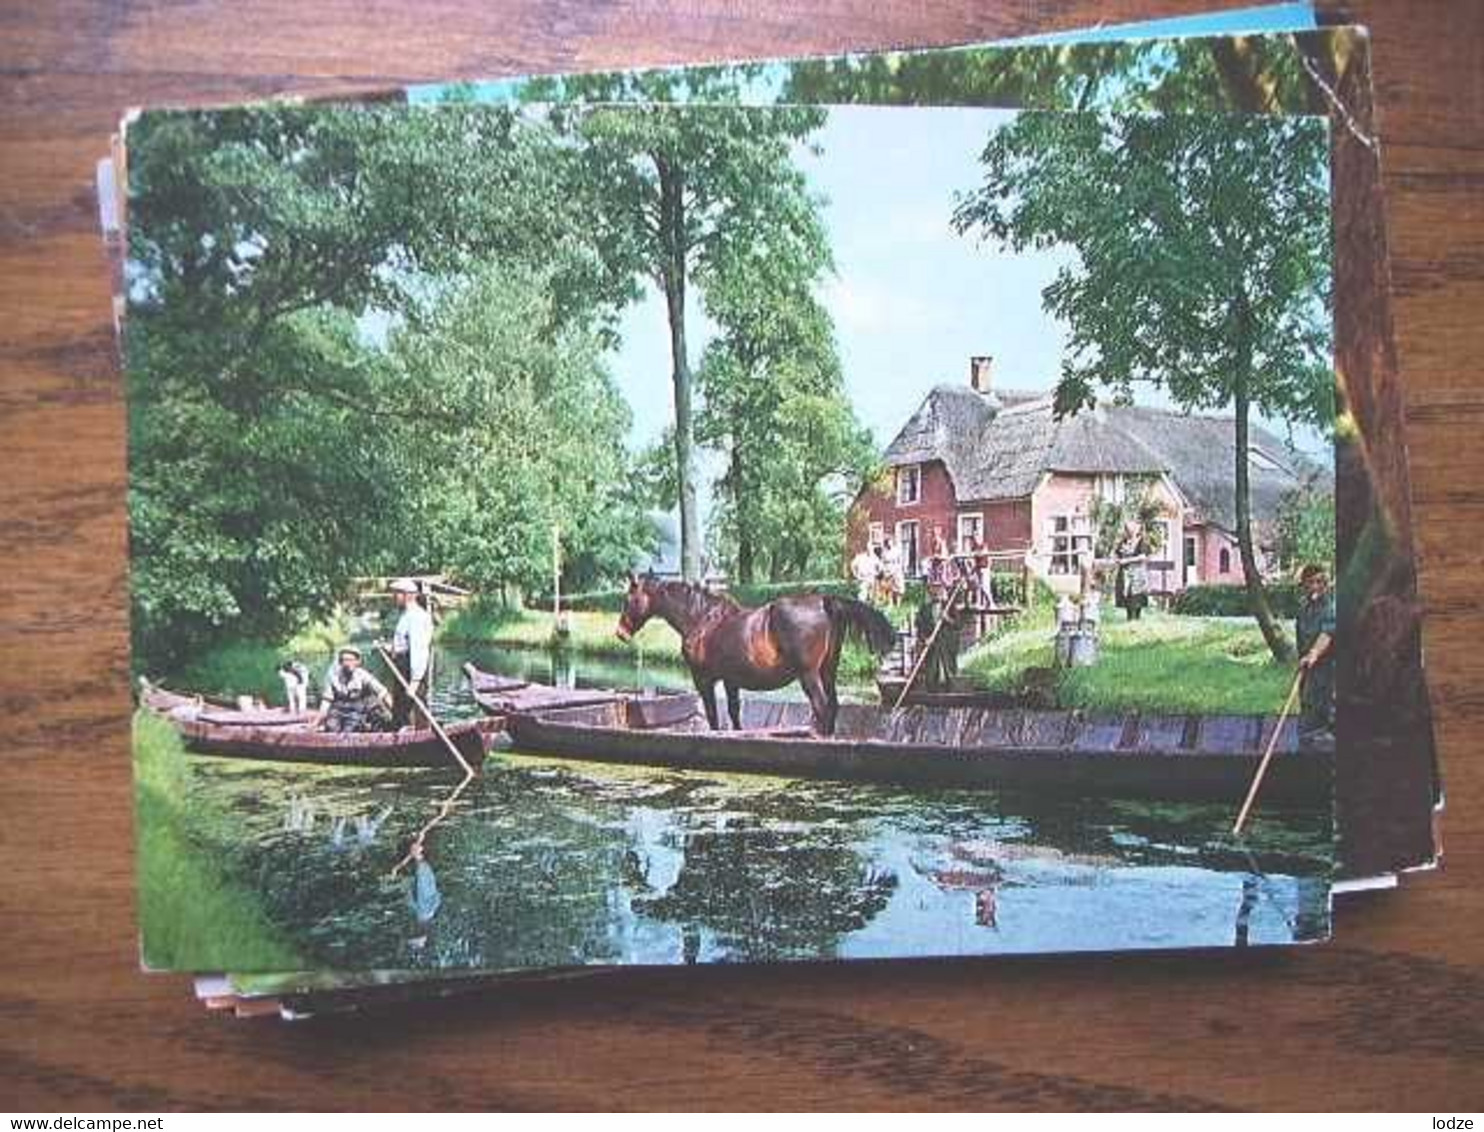 Nederland Holland Pays Bas Giethoorn Met Paard Op Praam - Giethoorn